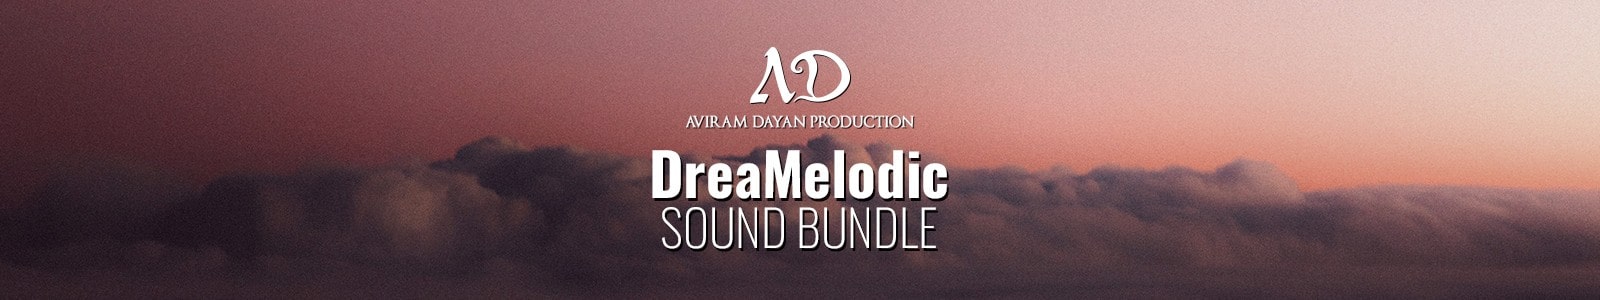 dreamelodic sound bundle